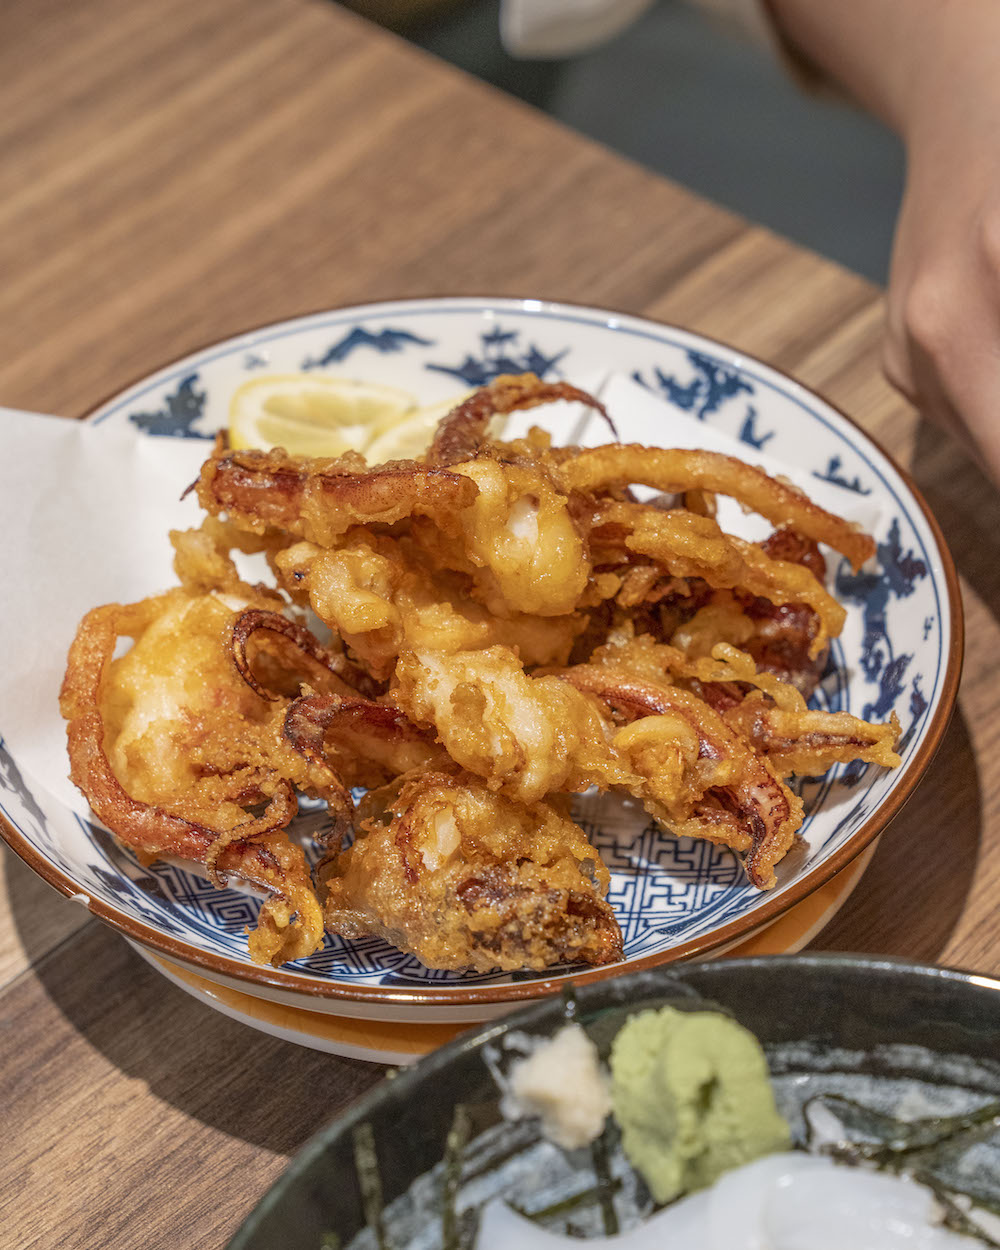 赤木鮮魚店，台北美食，榮星花園旁巷弄的美味生魚丼飯，老饕的平價選擇